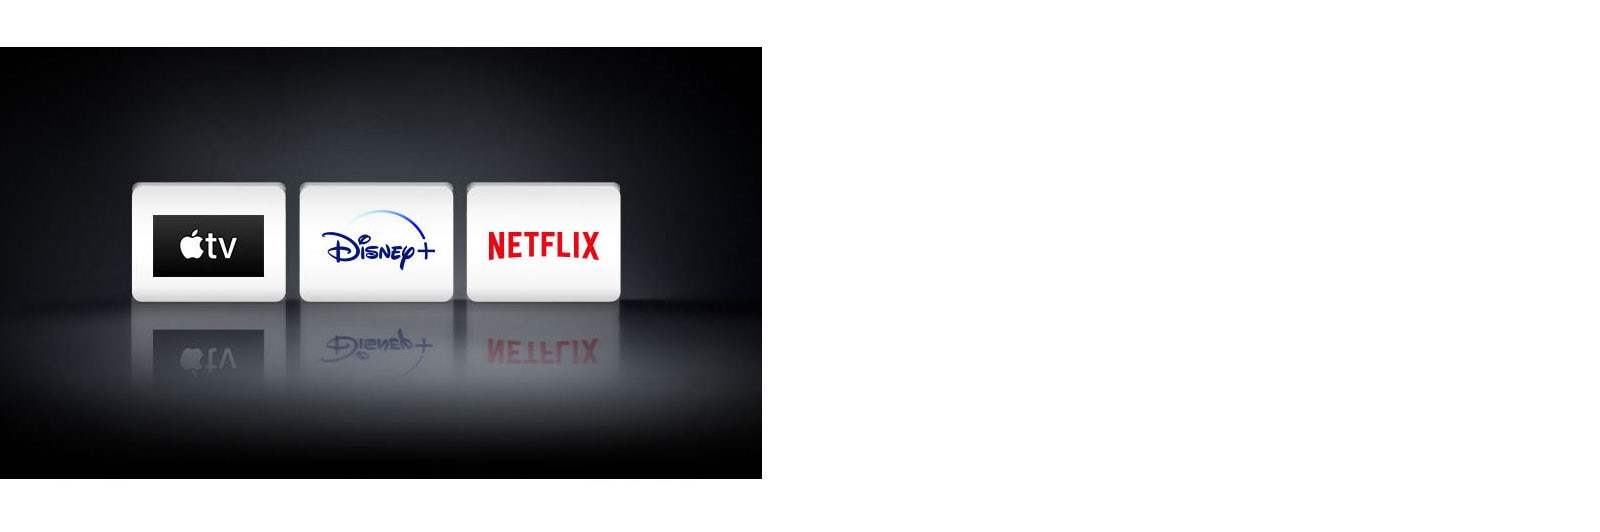 λογότυπα: Η εφαρμογή Apple TV, Disney+ και Netflix